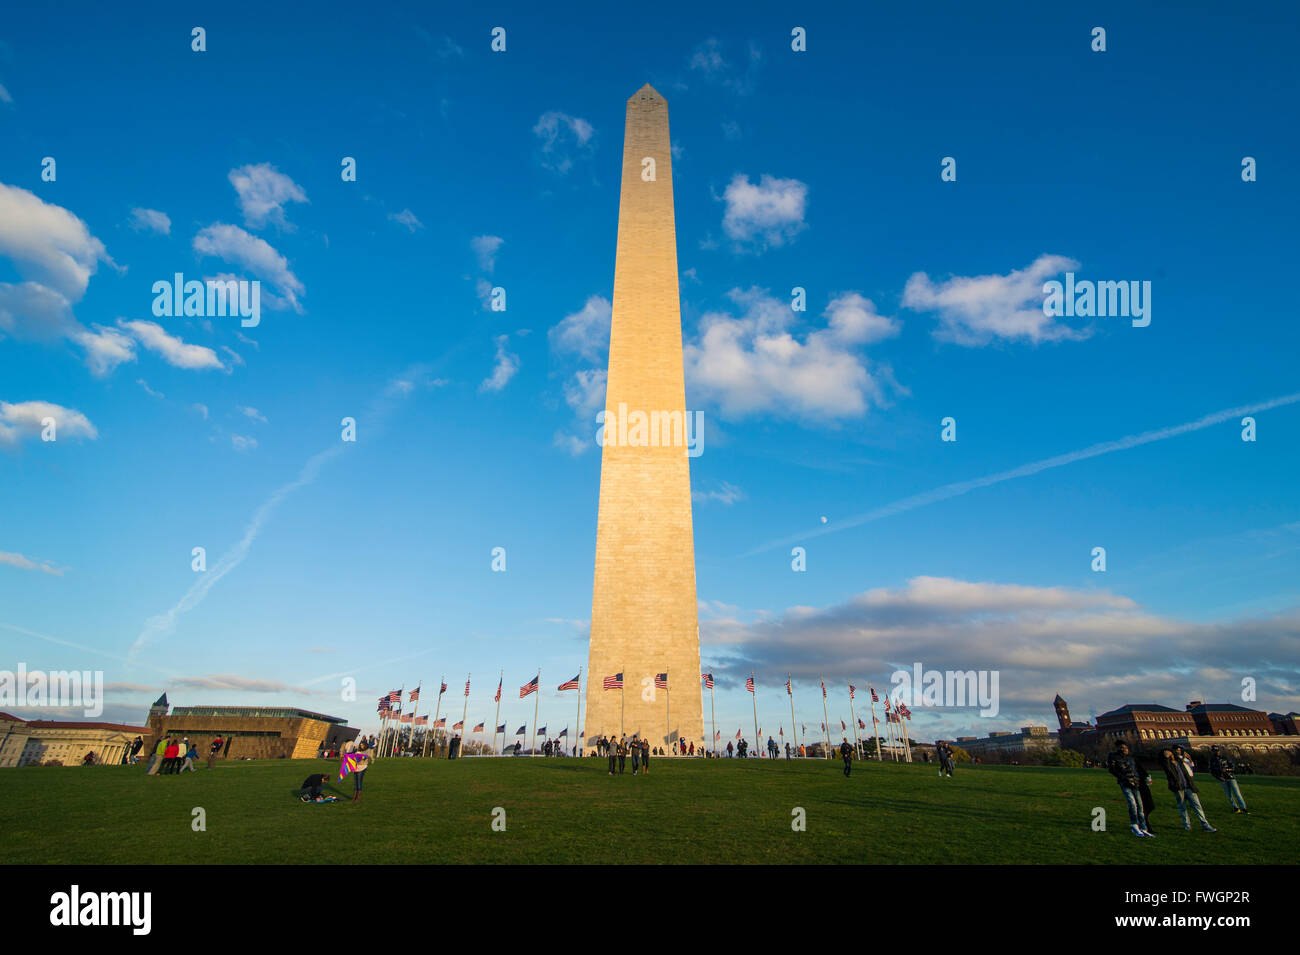 Obelisk des Washington Monument in der Mall, Washington, District Of Columbia, Vereinigte Staaten von Amerika, Nordamerika Stockfoto